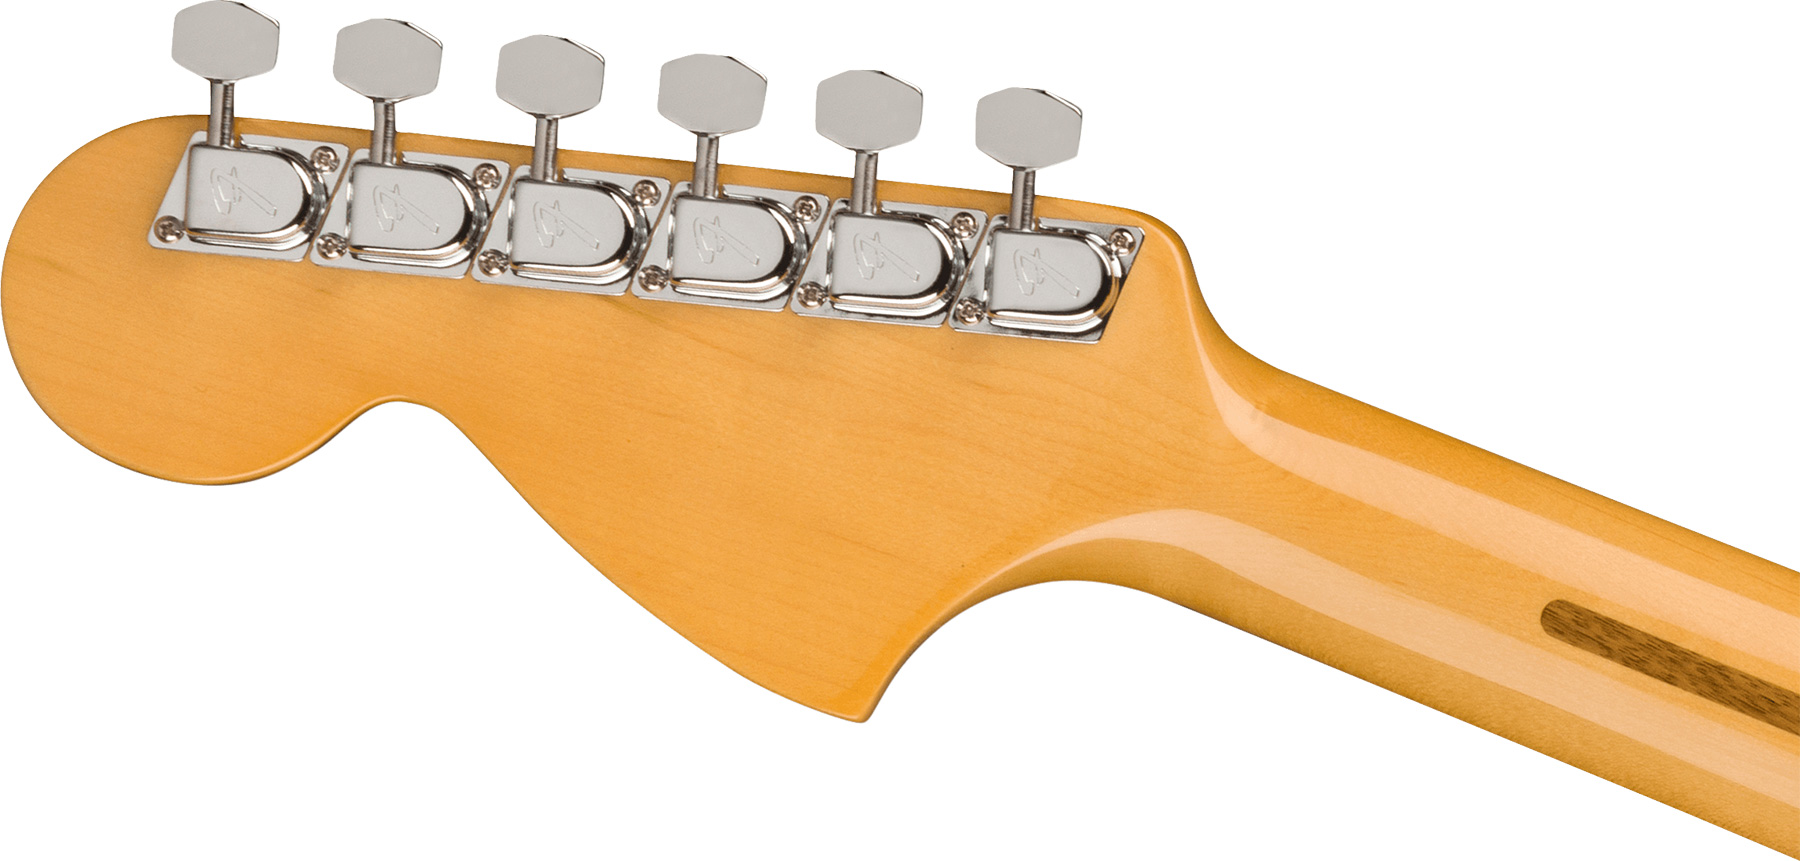 Fender Strat 1973 American Vintage Ii Usa 3s Trem Rw - Aged Natural - E-Gitarre in Str-Form - Variation 3